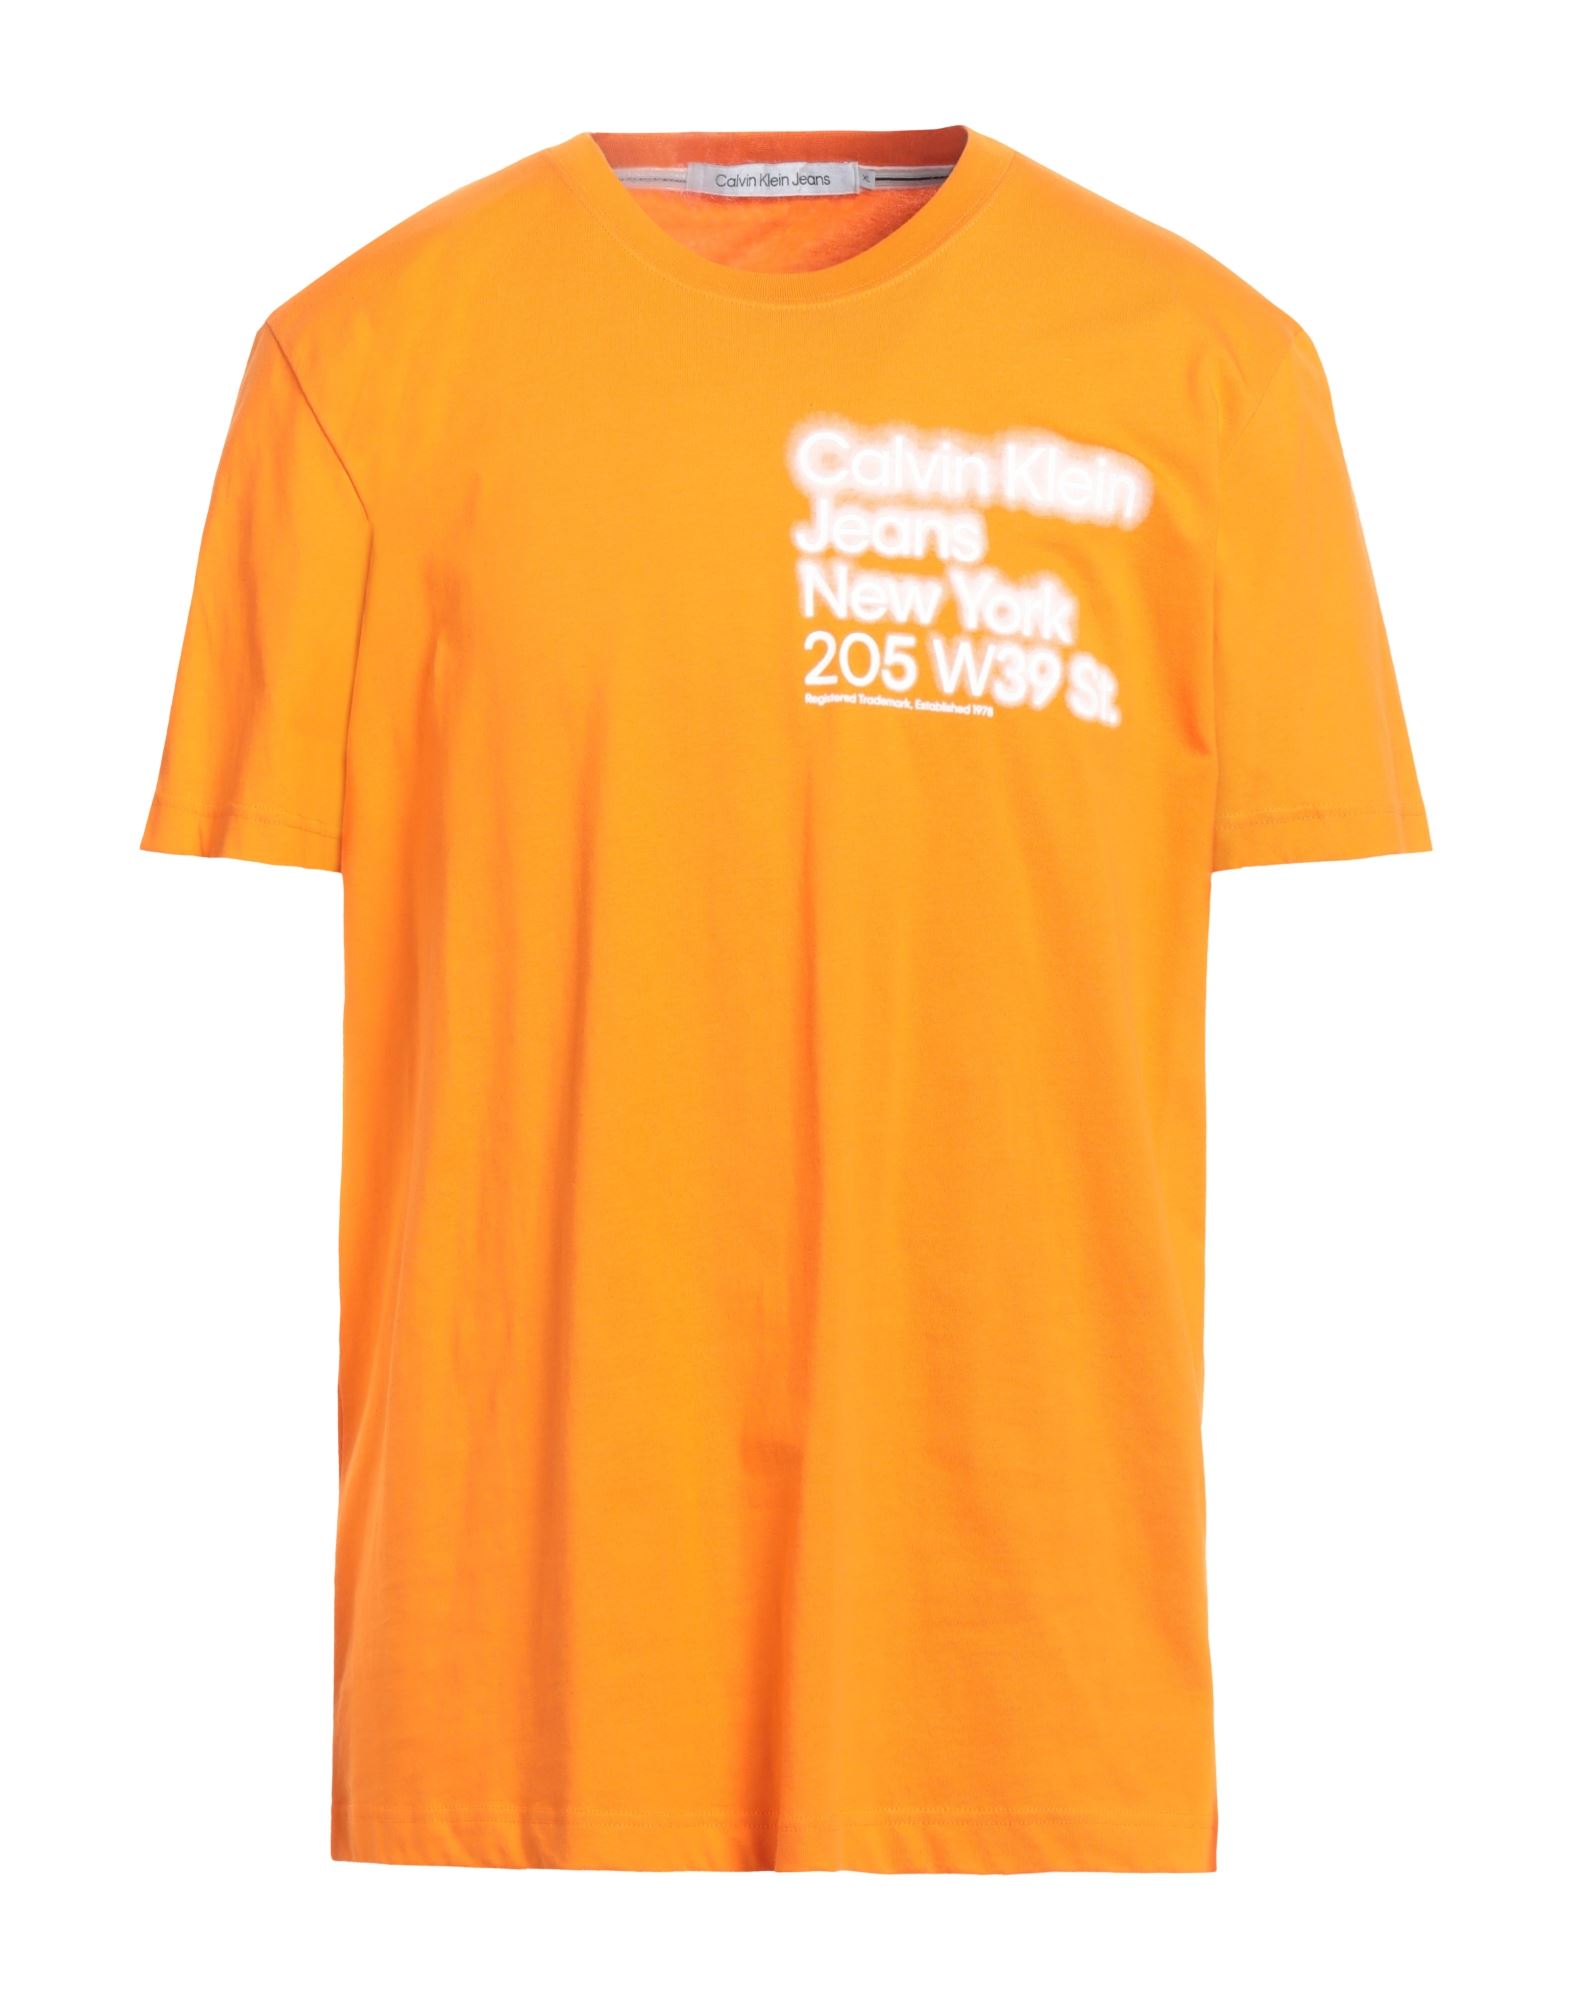 CALVIN KLEIN JEANS T-shirts Herren Orange von CALVIN KLEIN JEANS